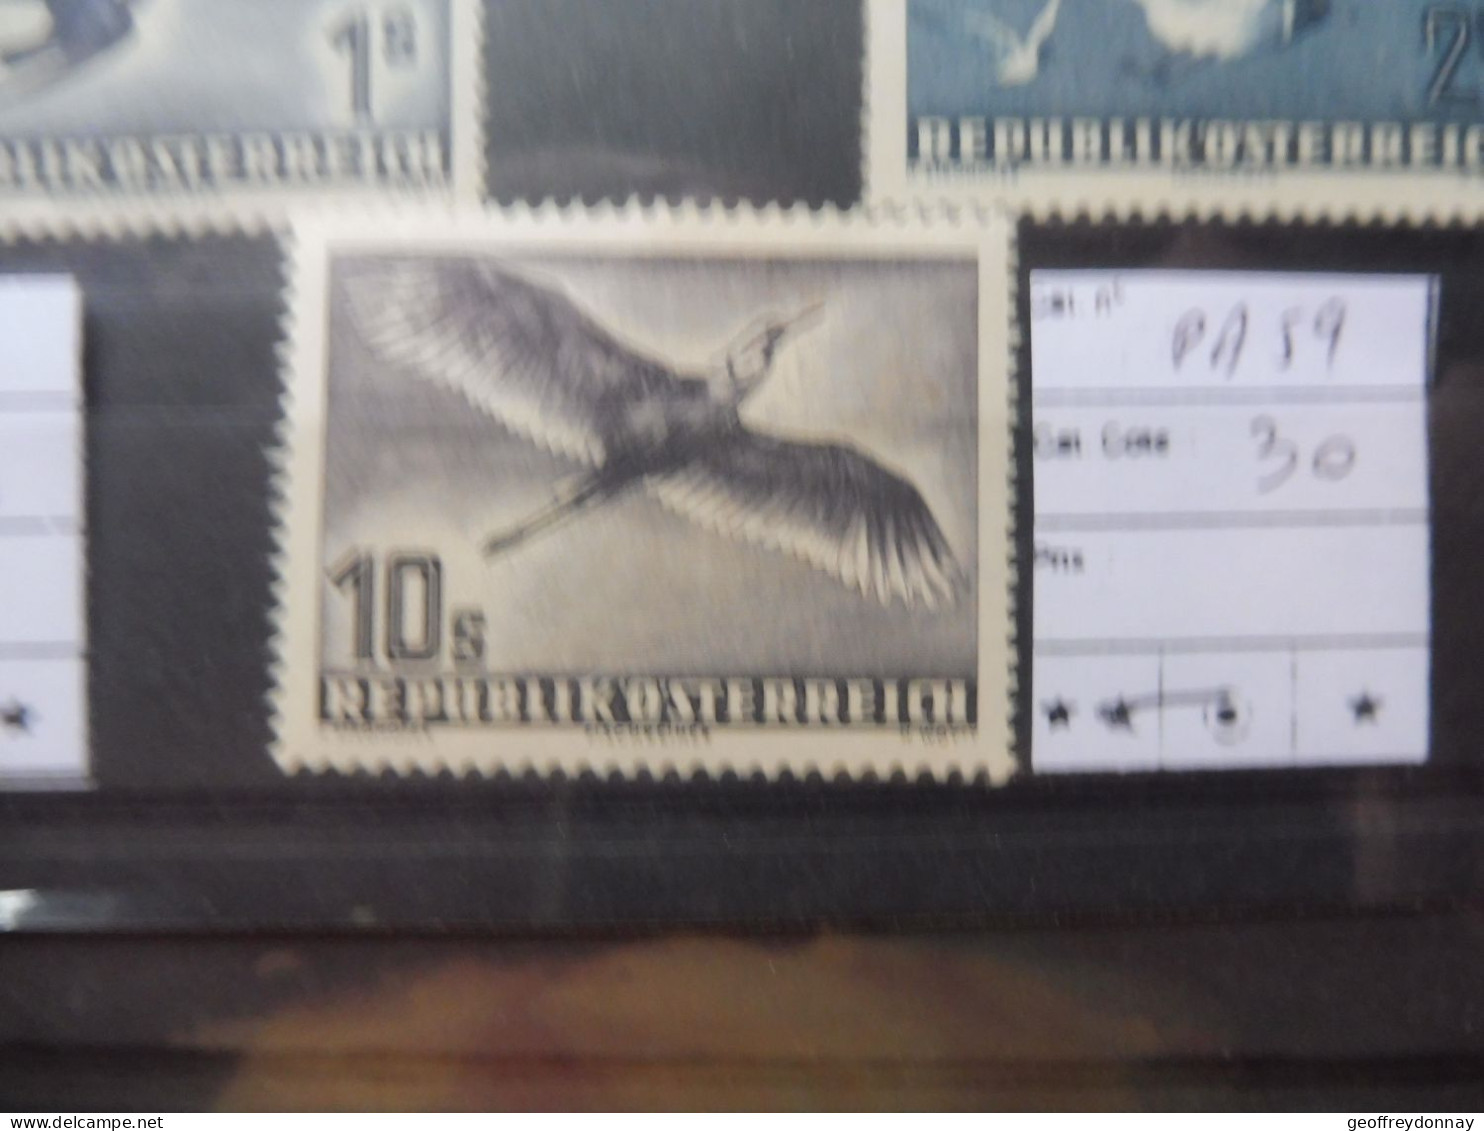 Autriche Osterreich Austria Pa Poste Aerienne 59  Mh Neuf * Plakken Perfect Parfait Etat Perfect Oiseaux Vogels Birds - Neufs